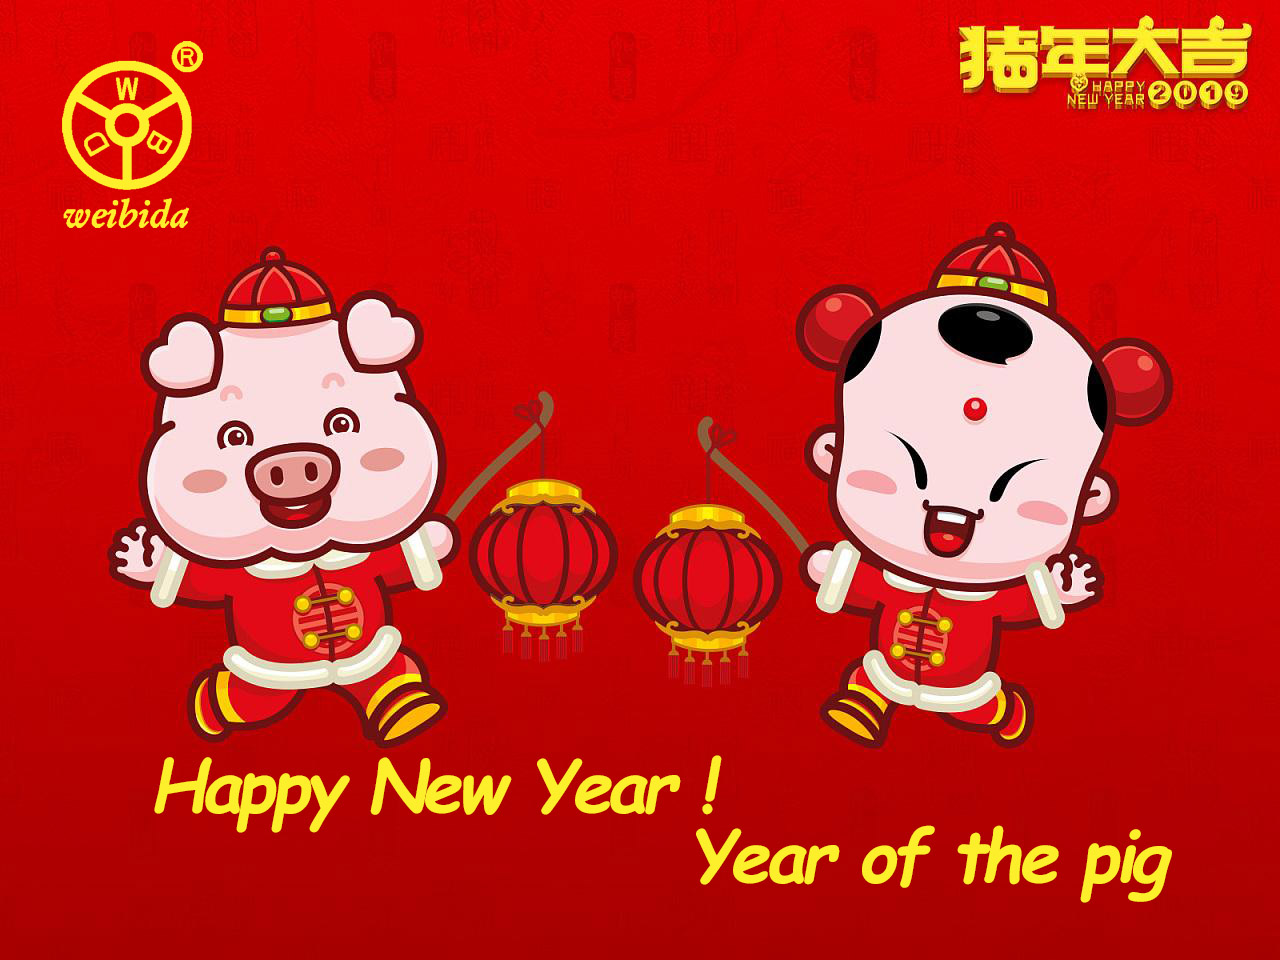 Das chinesische Neujahr kommt